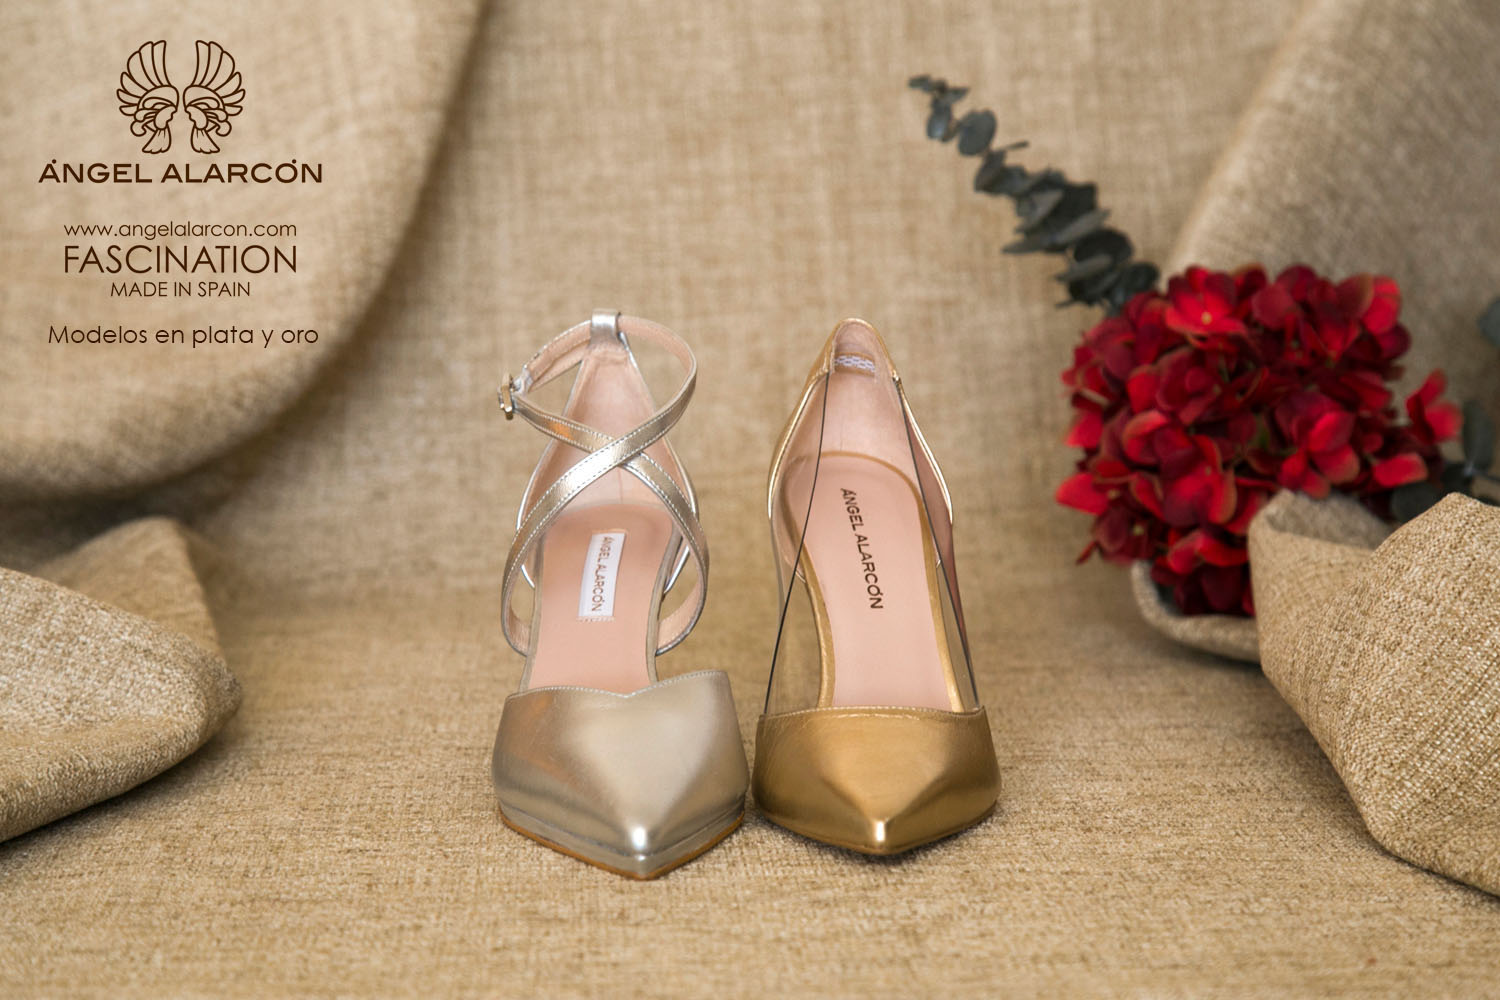 leopardo Sumamente elegante gramática Bridal shoes 2019 - Ángel Alarcón - Comfortable shoes Made in Spain